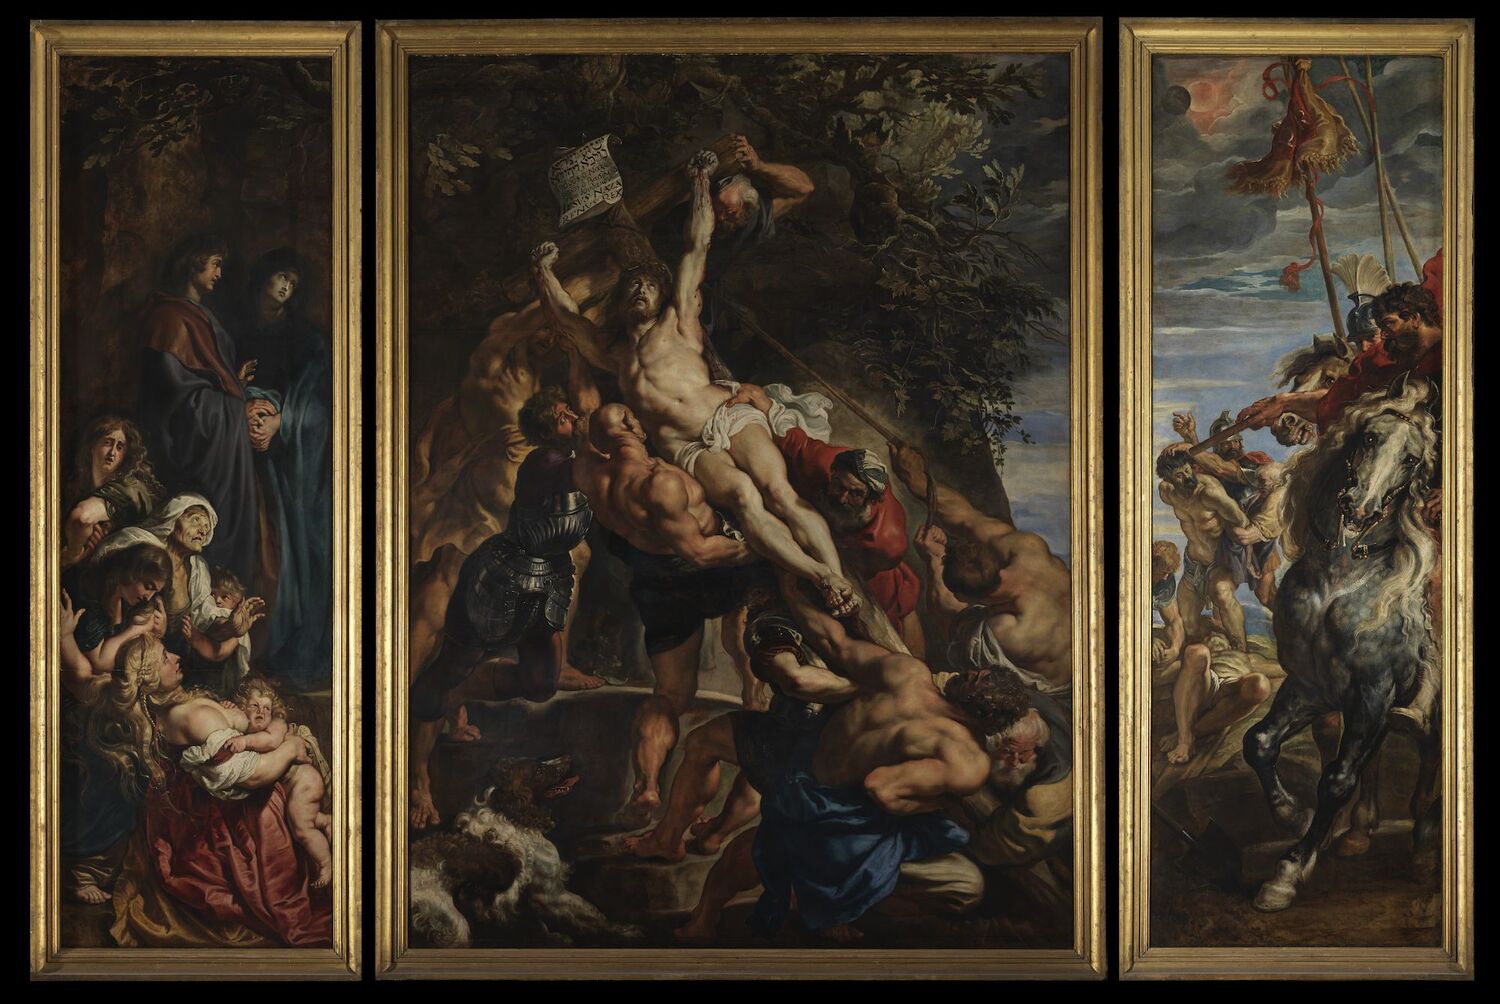 Pieter Paul Rubens, De Kruisoprichting, 1609-1610, in de Onze-Lieve-Vrouwekathedraal van Antwerpen. Het drieluik illustreert de barokke beeldtaal die Rubens uit Italië had meegebracht.